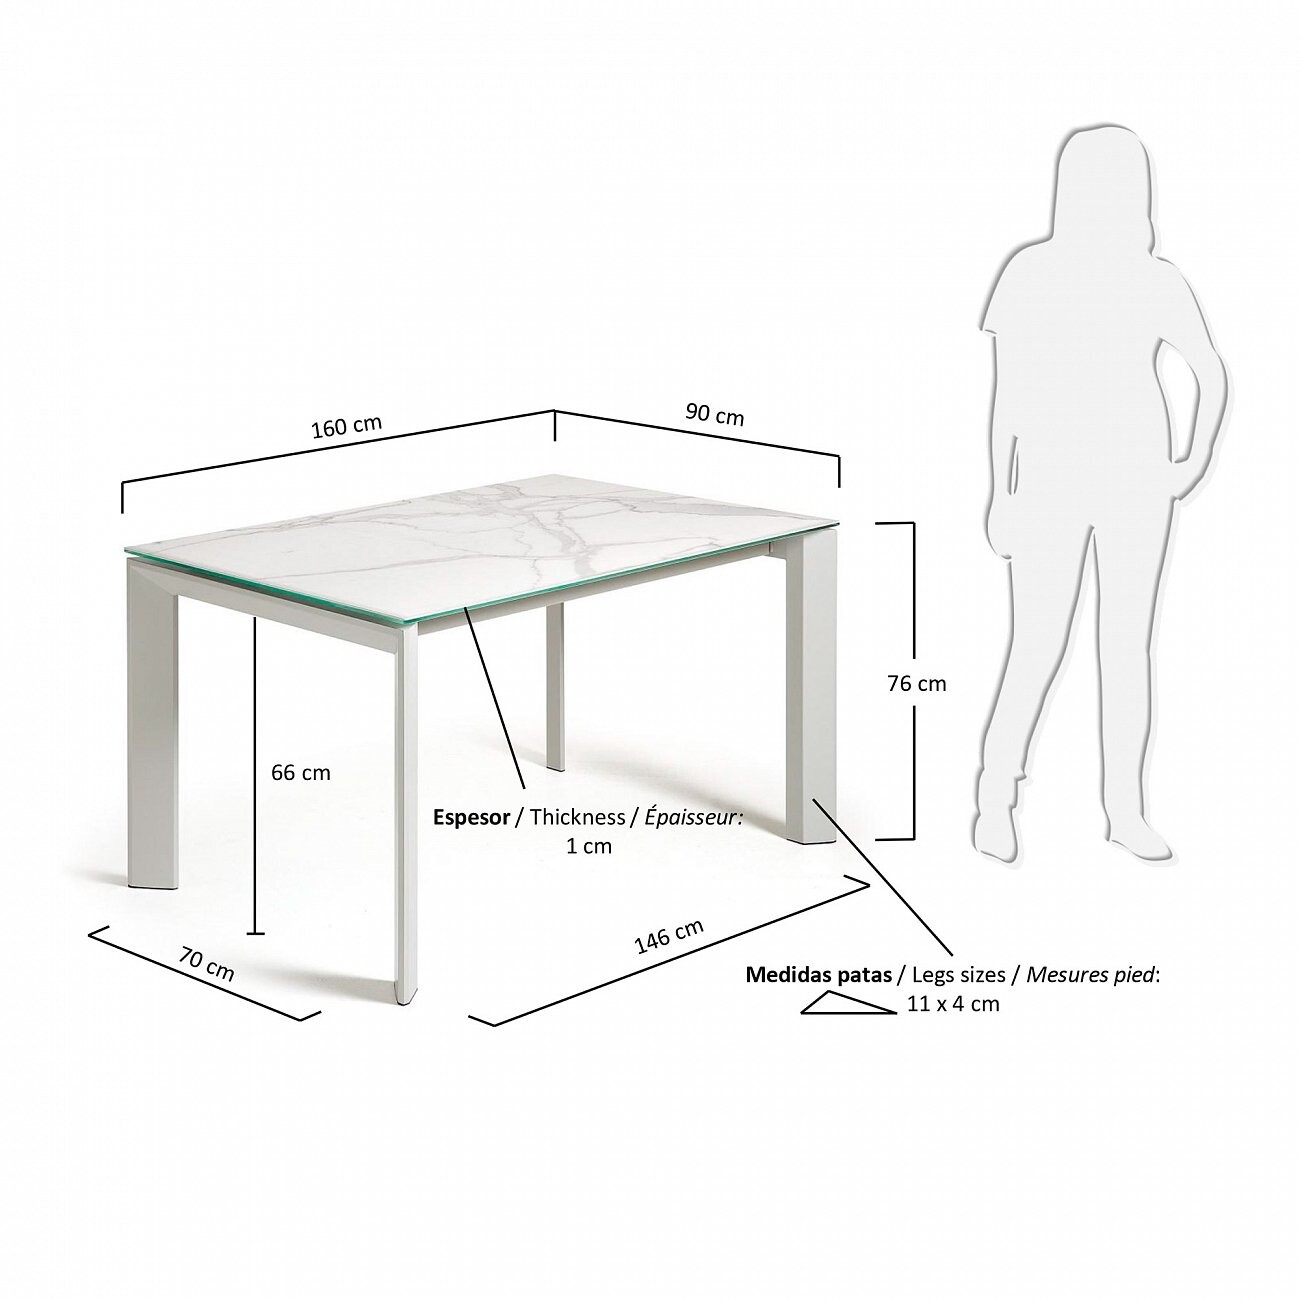 Высота обеденного стола со столешницей от пола